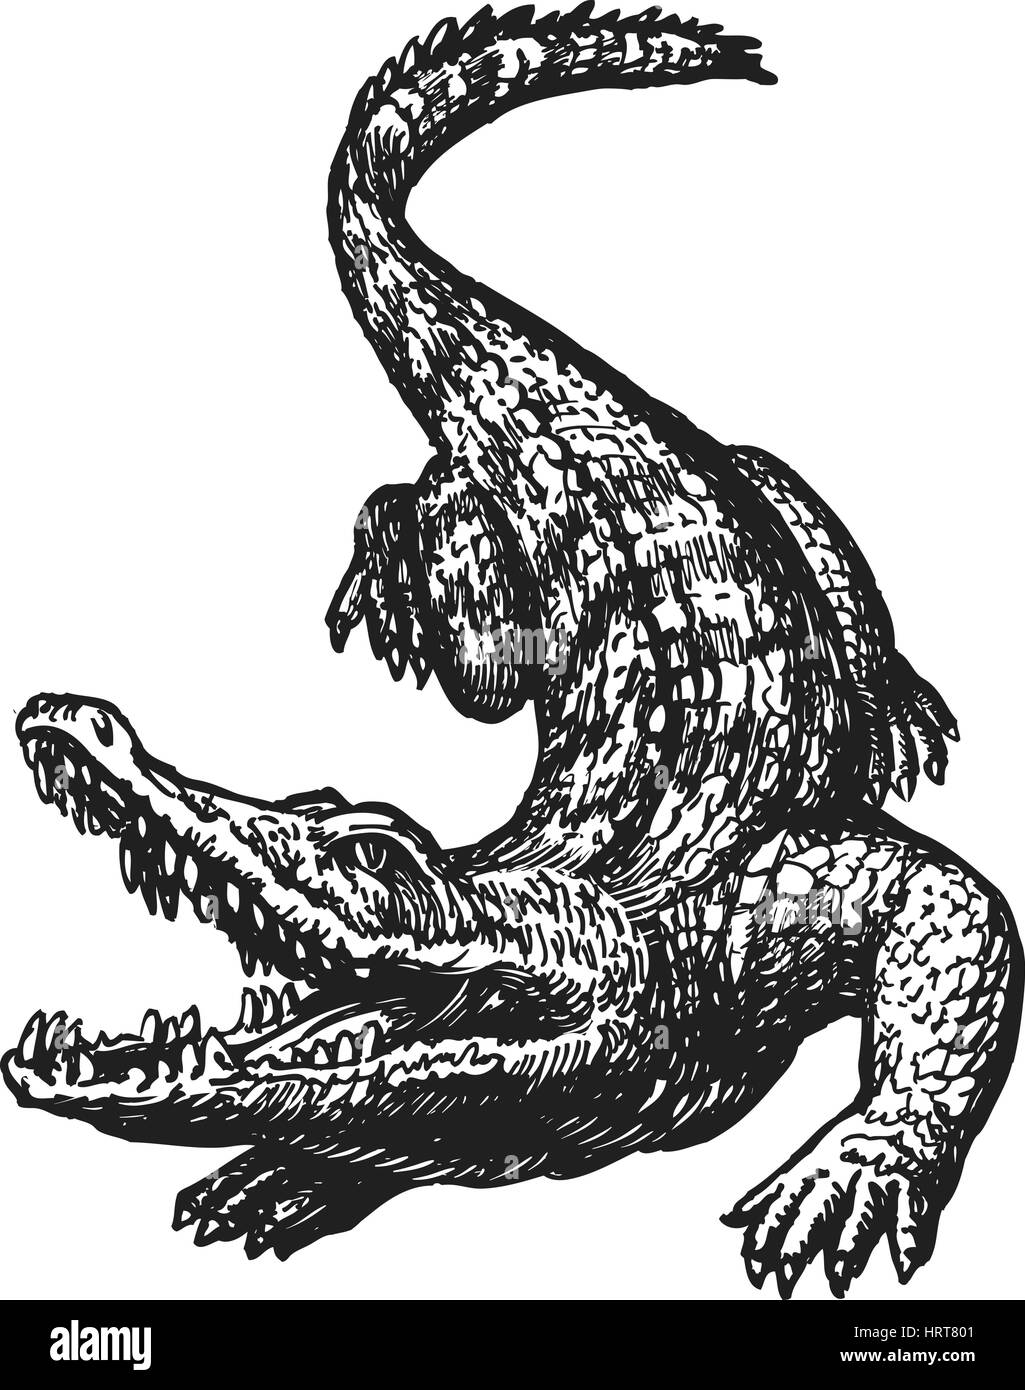 Disegnato a mano coccodrillo arrabbiato con bocca aperta, schizzo. Croc, coccodrillo gigante, Gator illustrazione vettoriale Illustrazione Vettoriale